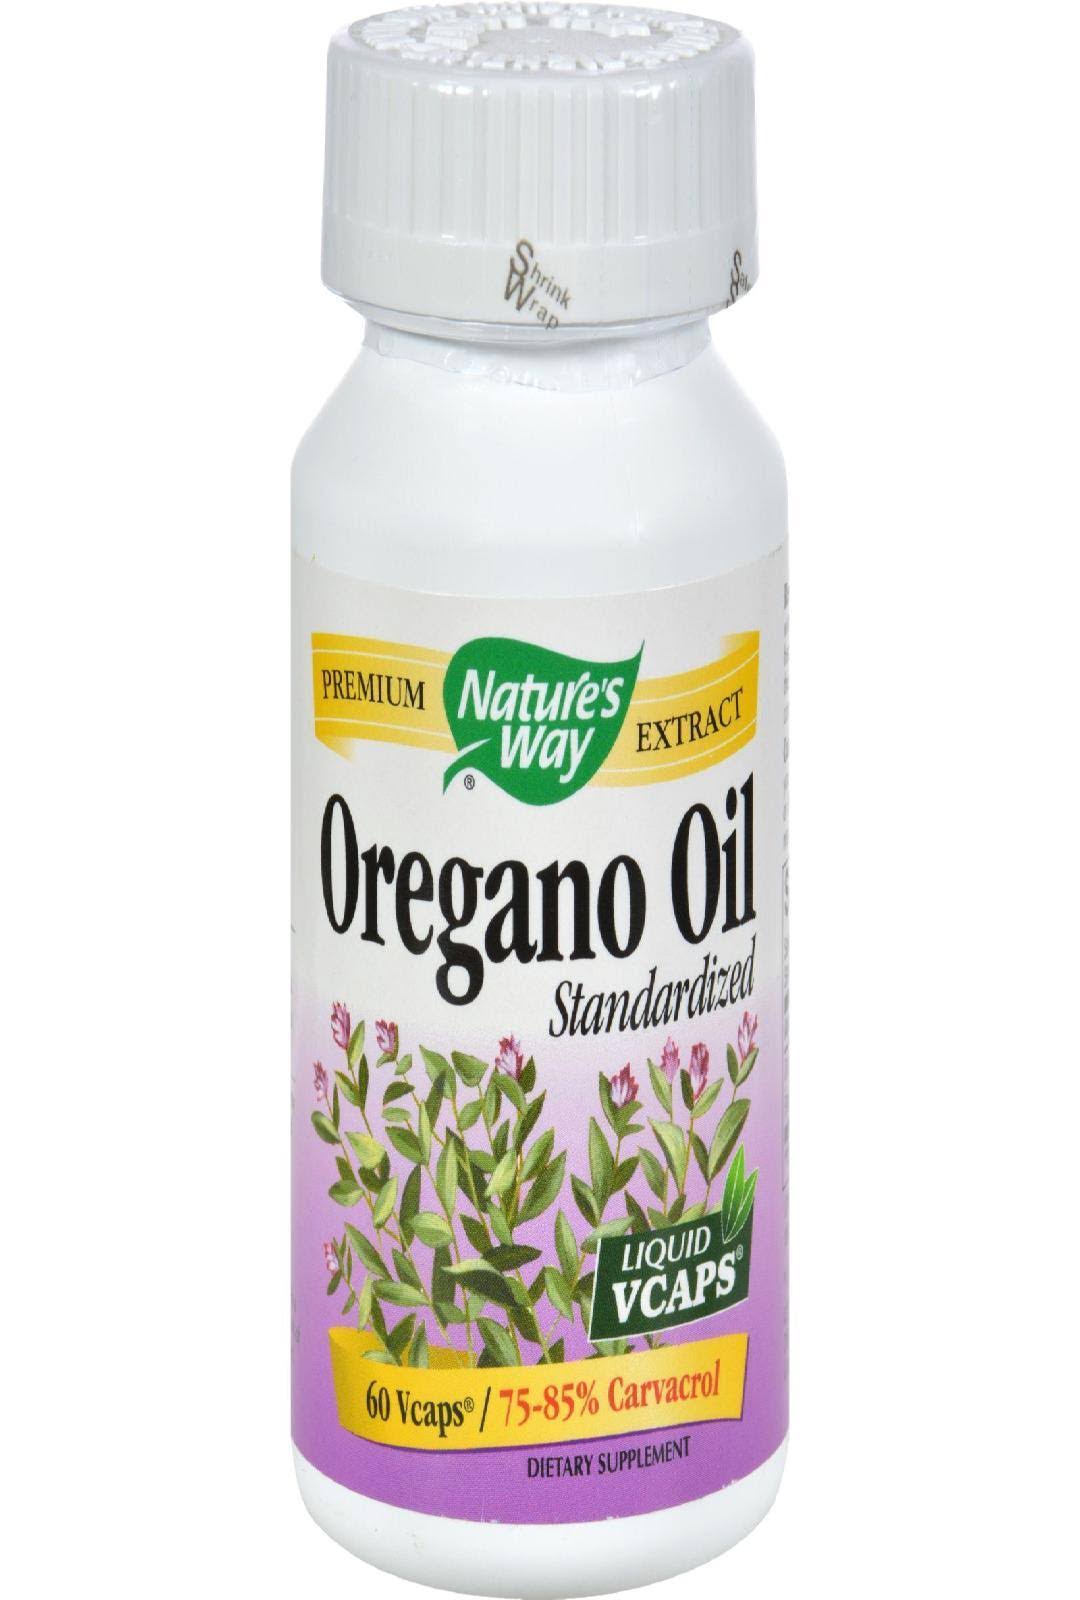 Nature's Way Oregano Oil - 60 Vcaps